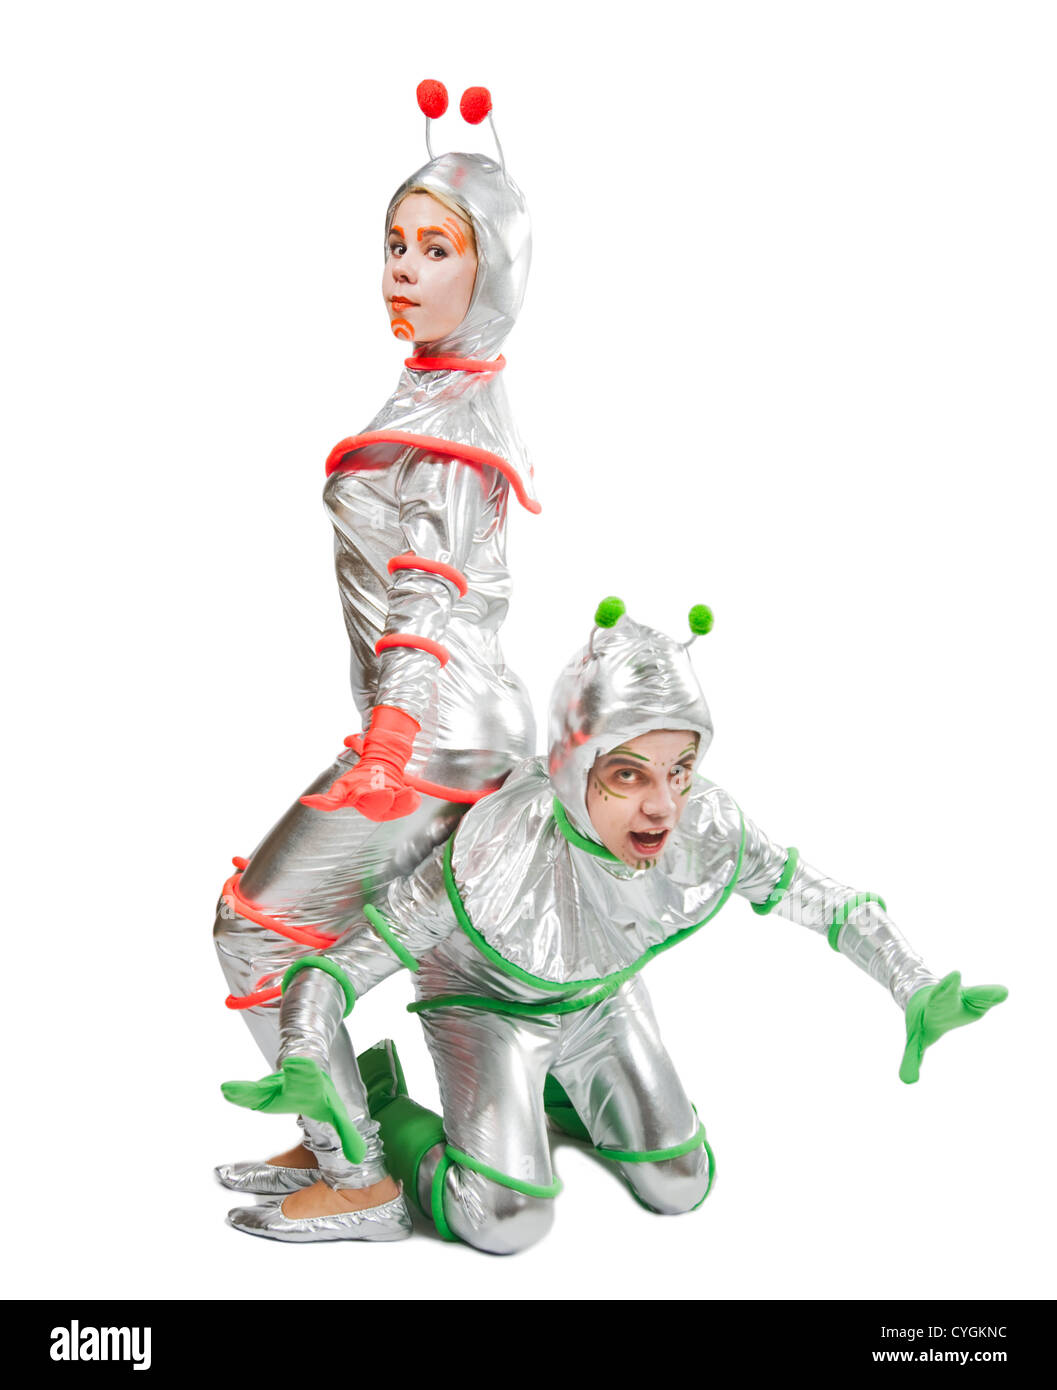 Außerirdische Wesen. Aliens. Zwei Personen tragen Kostüm lustige Aliens  Stockfotografie - Alamy